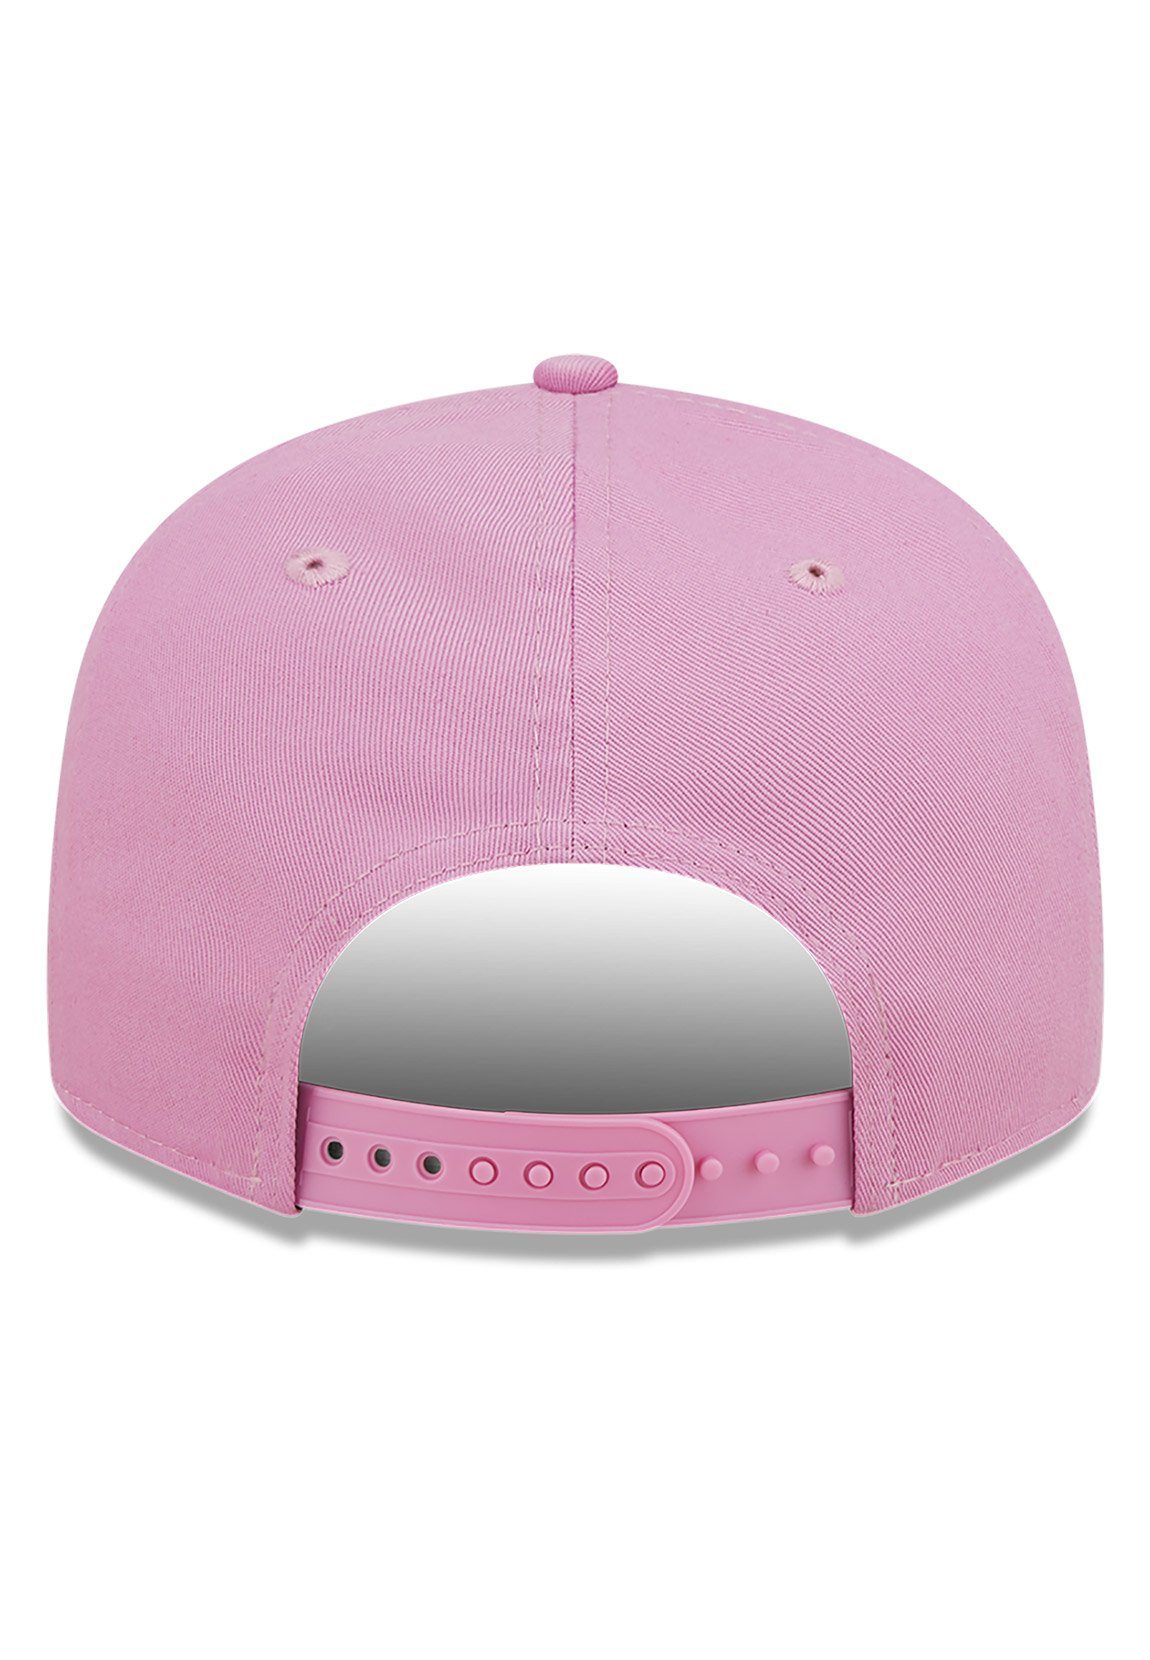 Snapback Pastel LA Snapback Patch 9Fifty New Cap Pink DODGERS New Era Cap Era